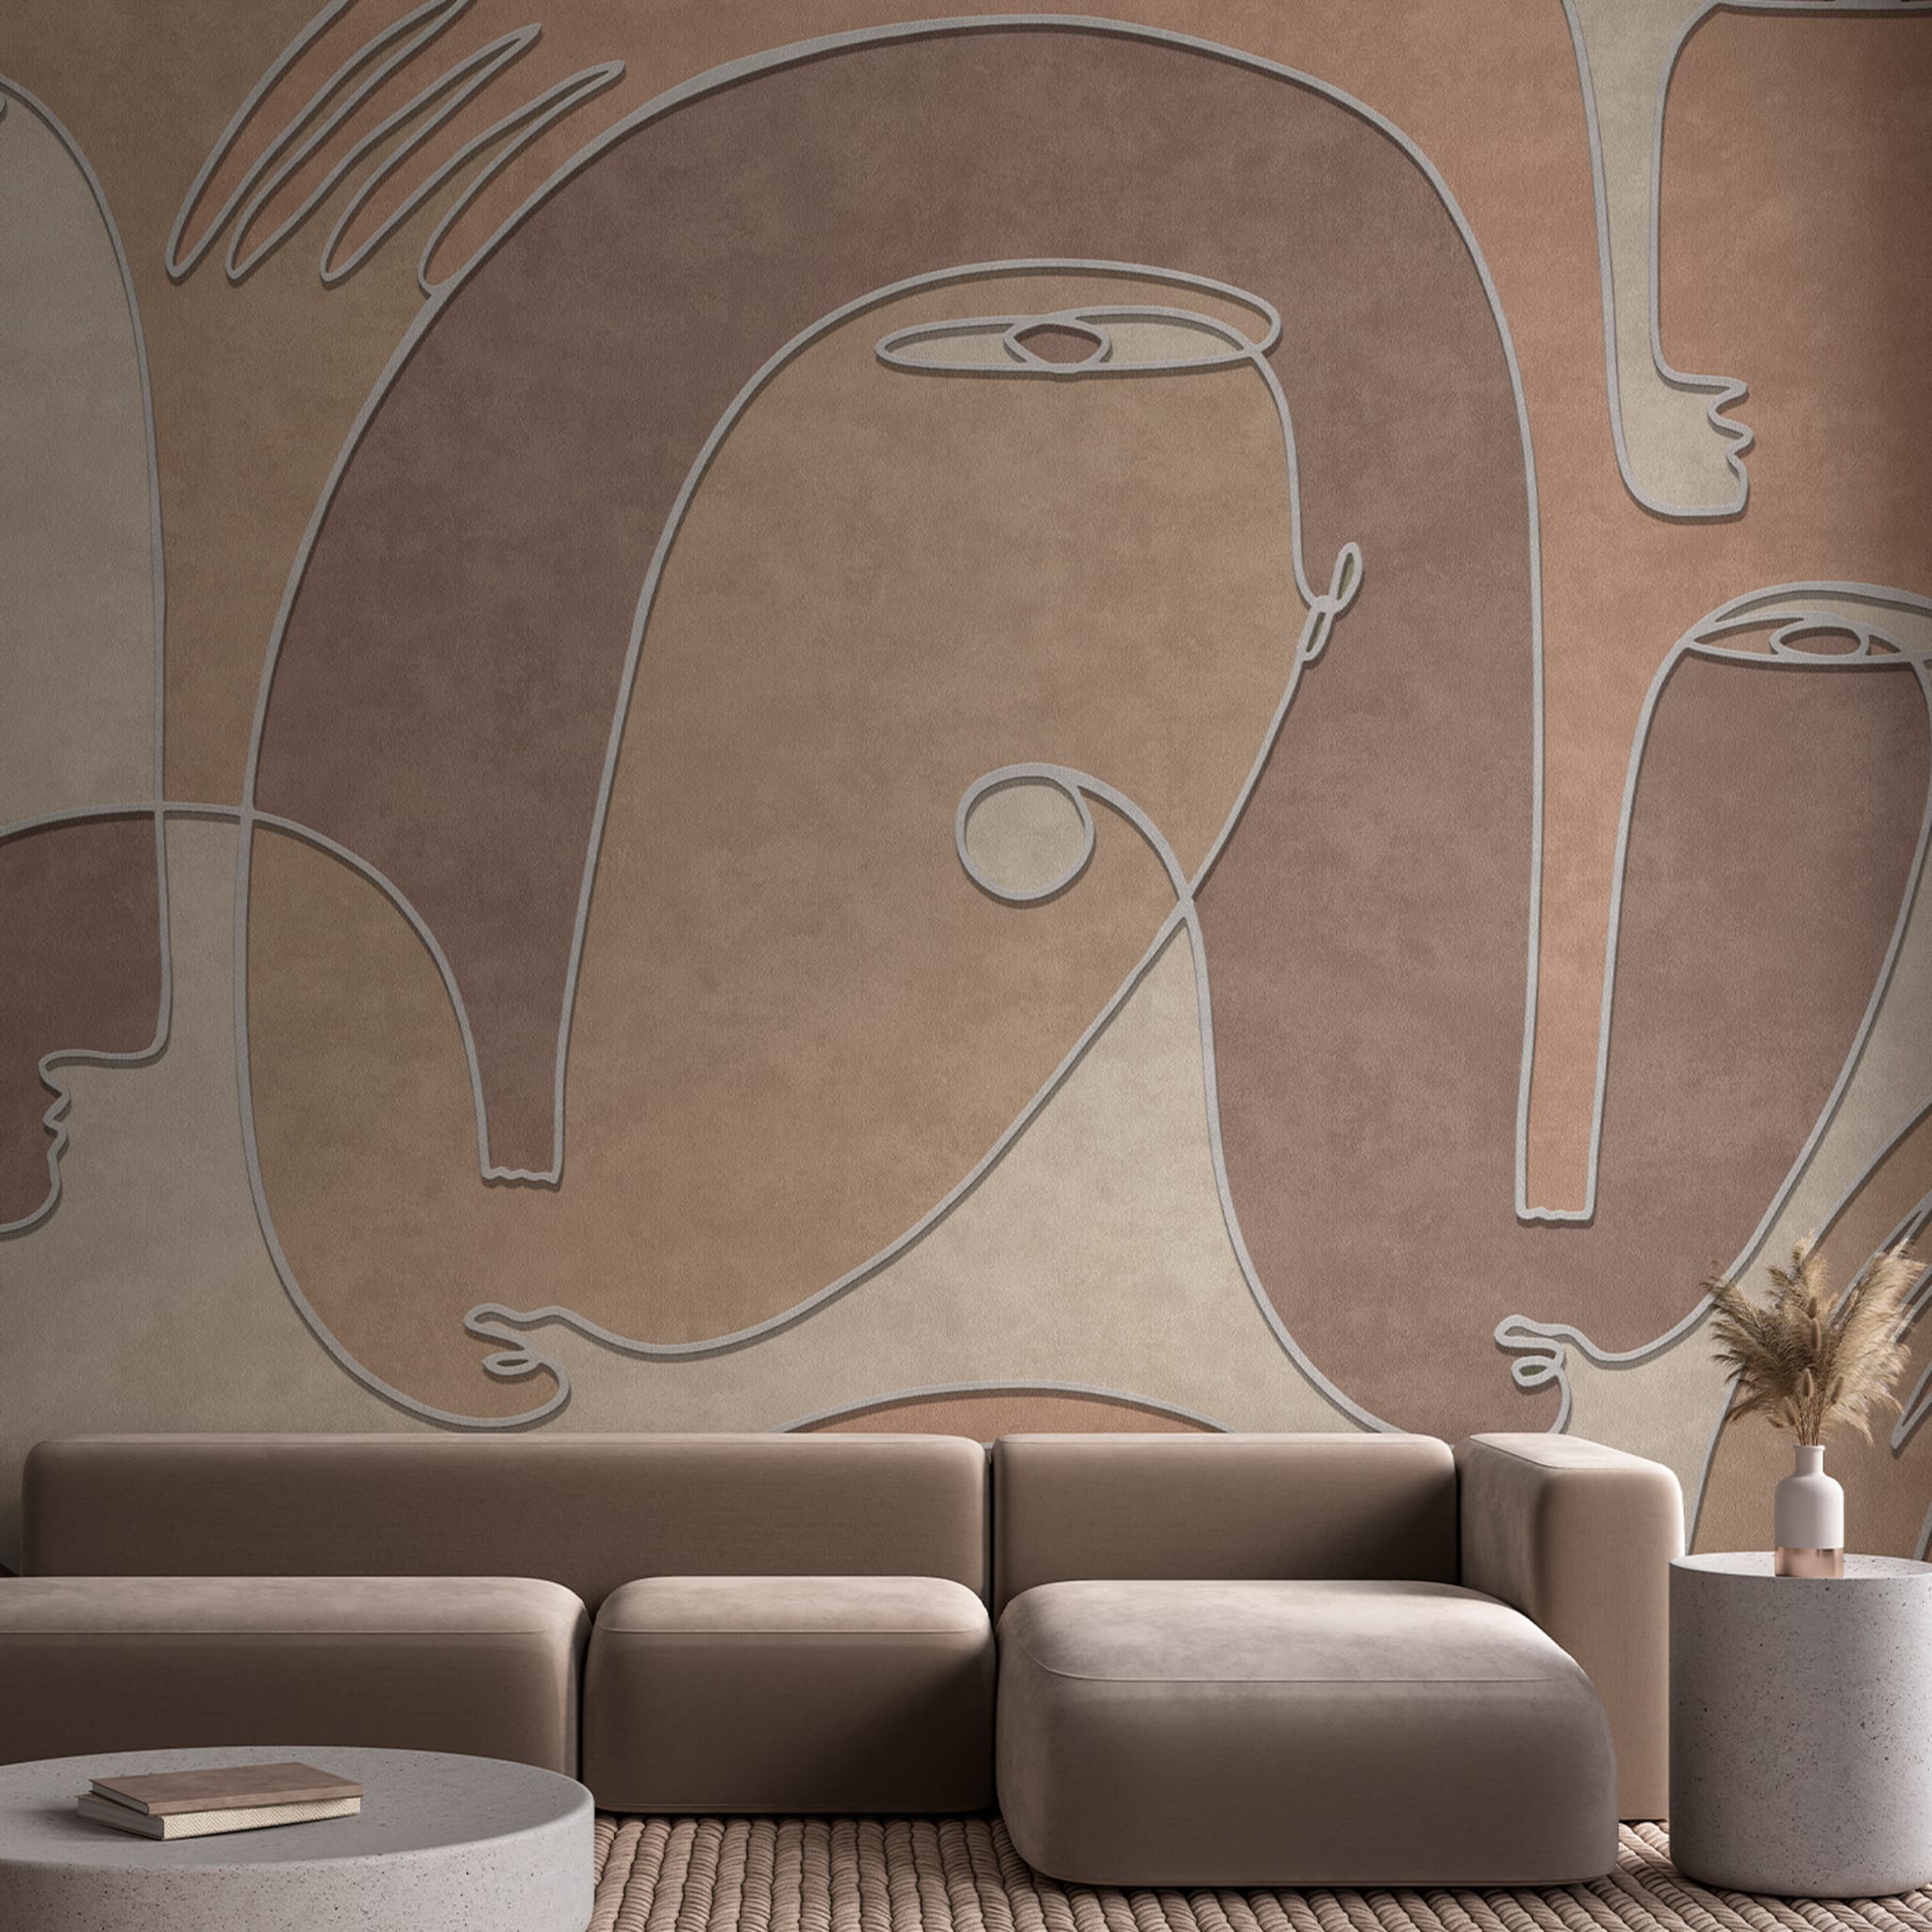 Oneline brown sugar textured wallpaper  - Alternative view 1